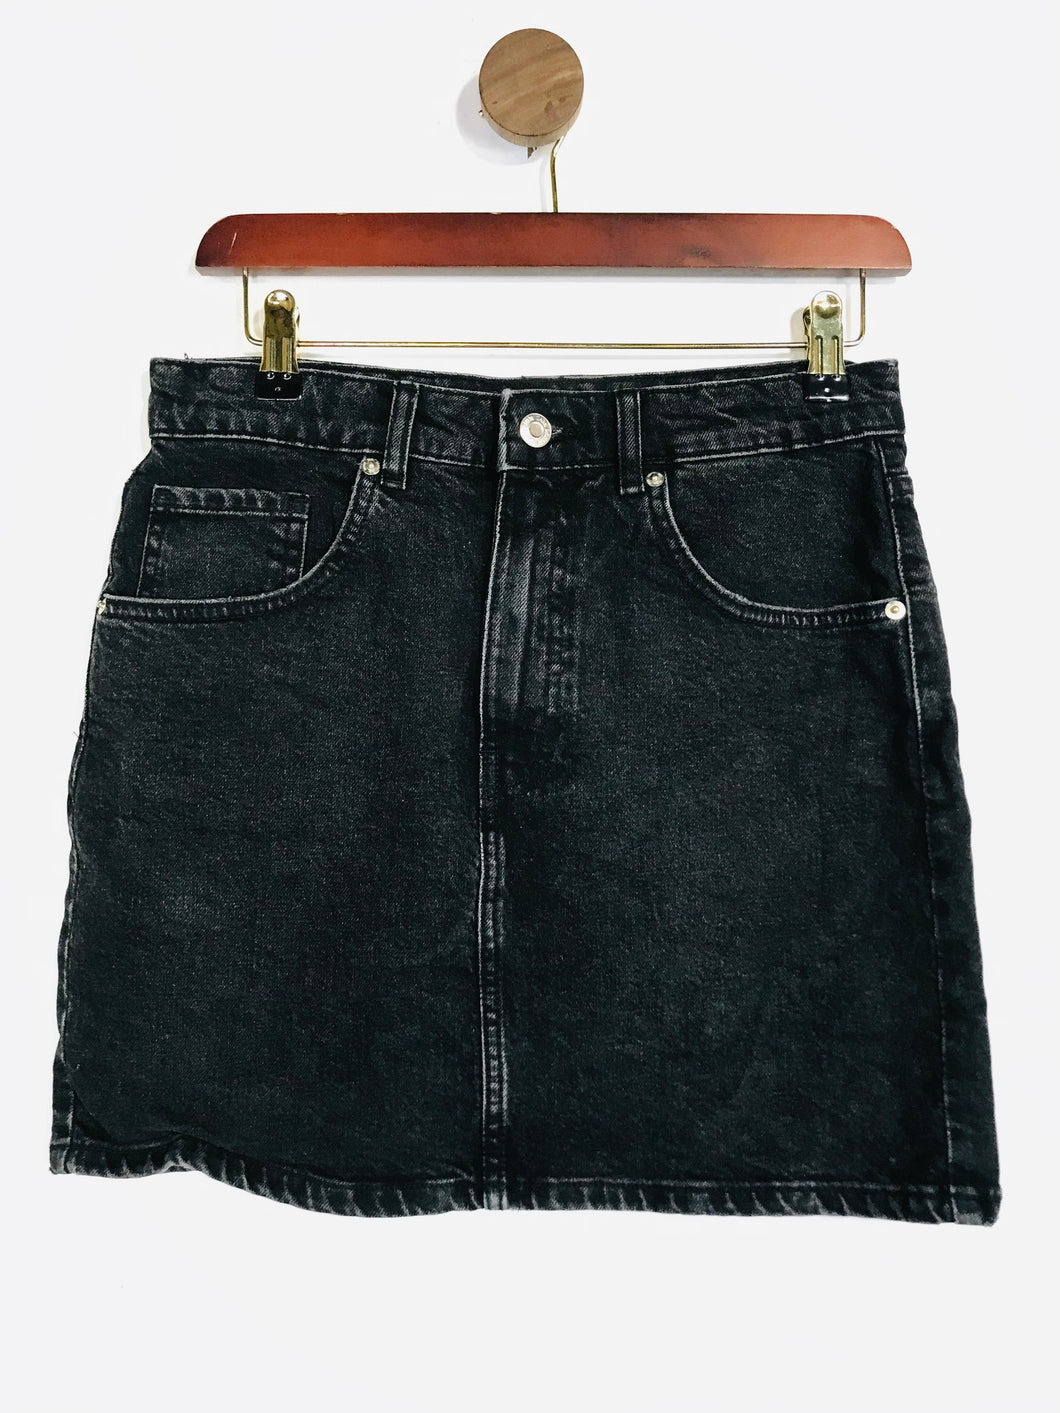 Zara Women's Denim Mini Skirt | M UK10-12 | Black